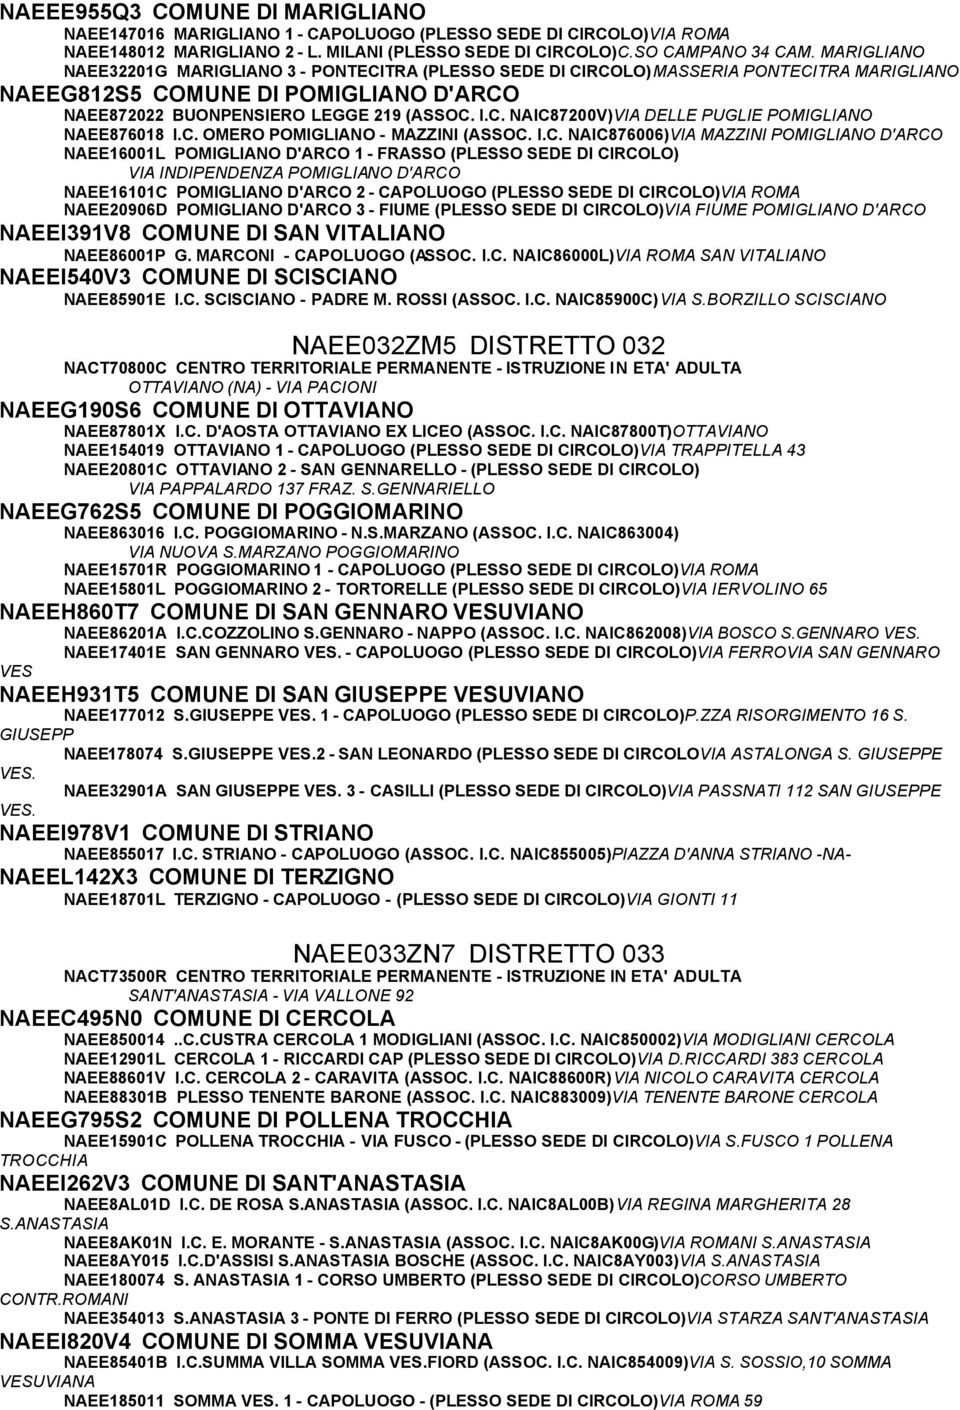 C. OMERO POMIGLIANO - MAZZINI (ASSOC. I.C. NAIC876006)VIA MAZZINI POMIGLIANO D'ARCO NAEE16001L POMIGLIANO D'ARCO 1 - FRASSO (PLESSO SEDE DI CIRCOLO) VIA INDIPENDENZA POMIGLIANO D'ARCO NAEE16101C